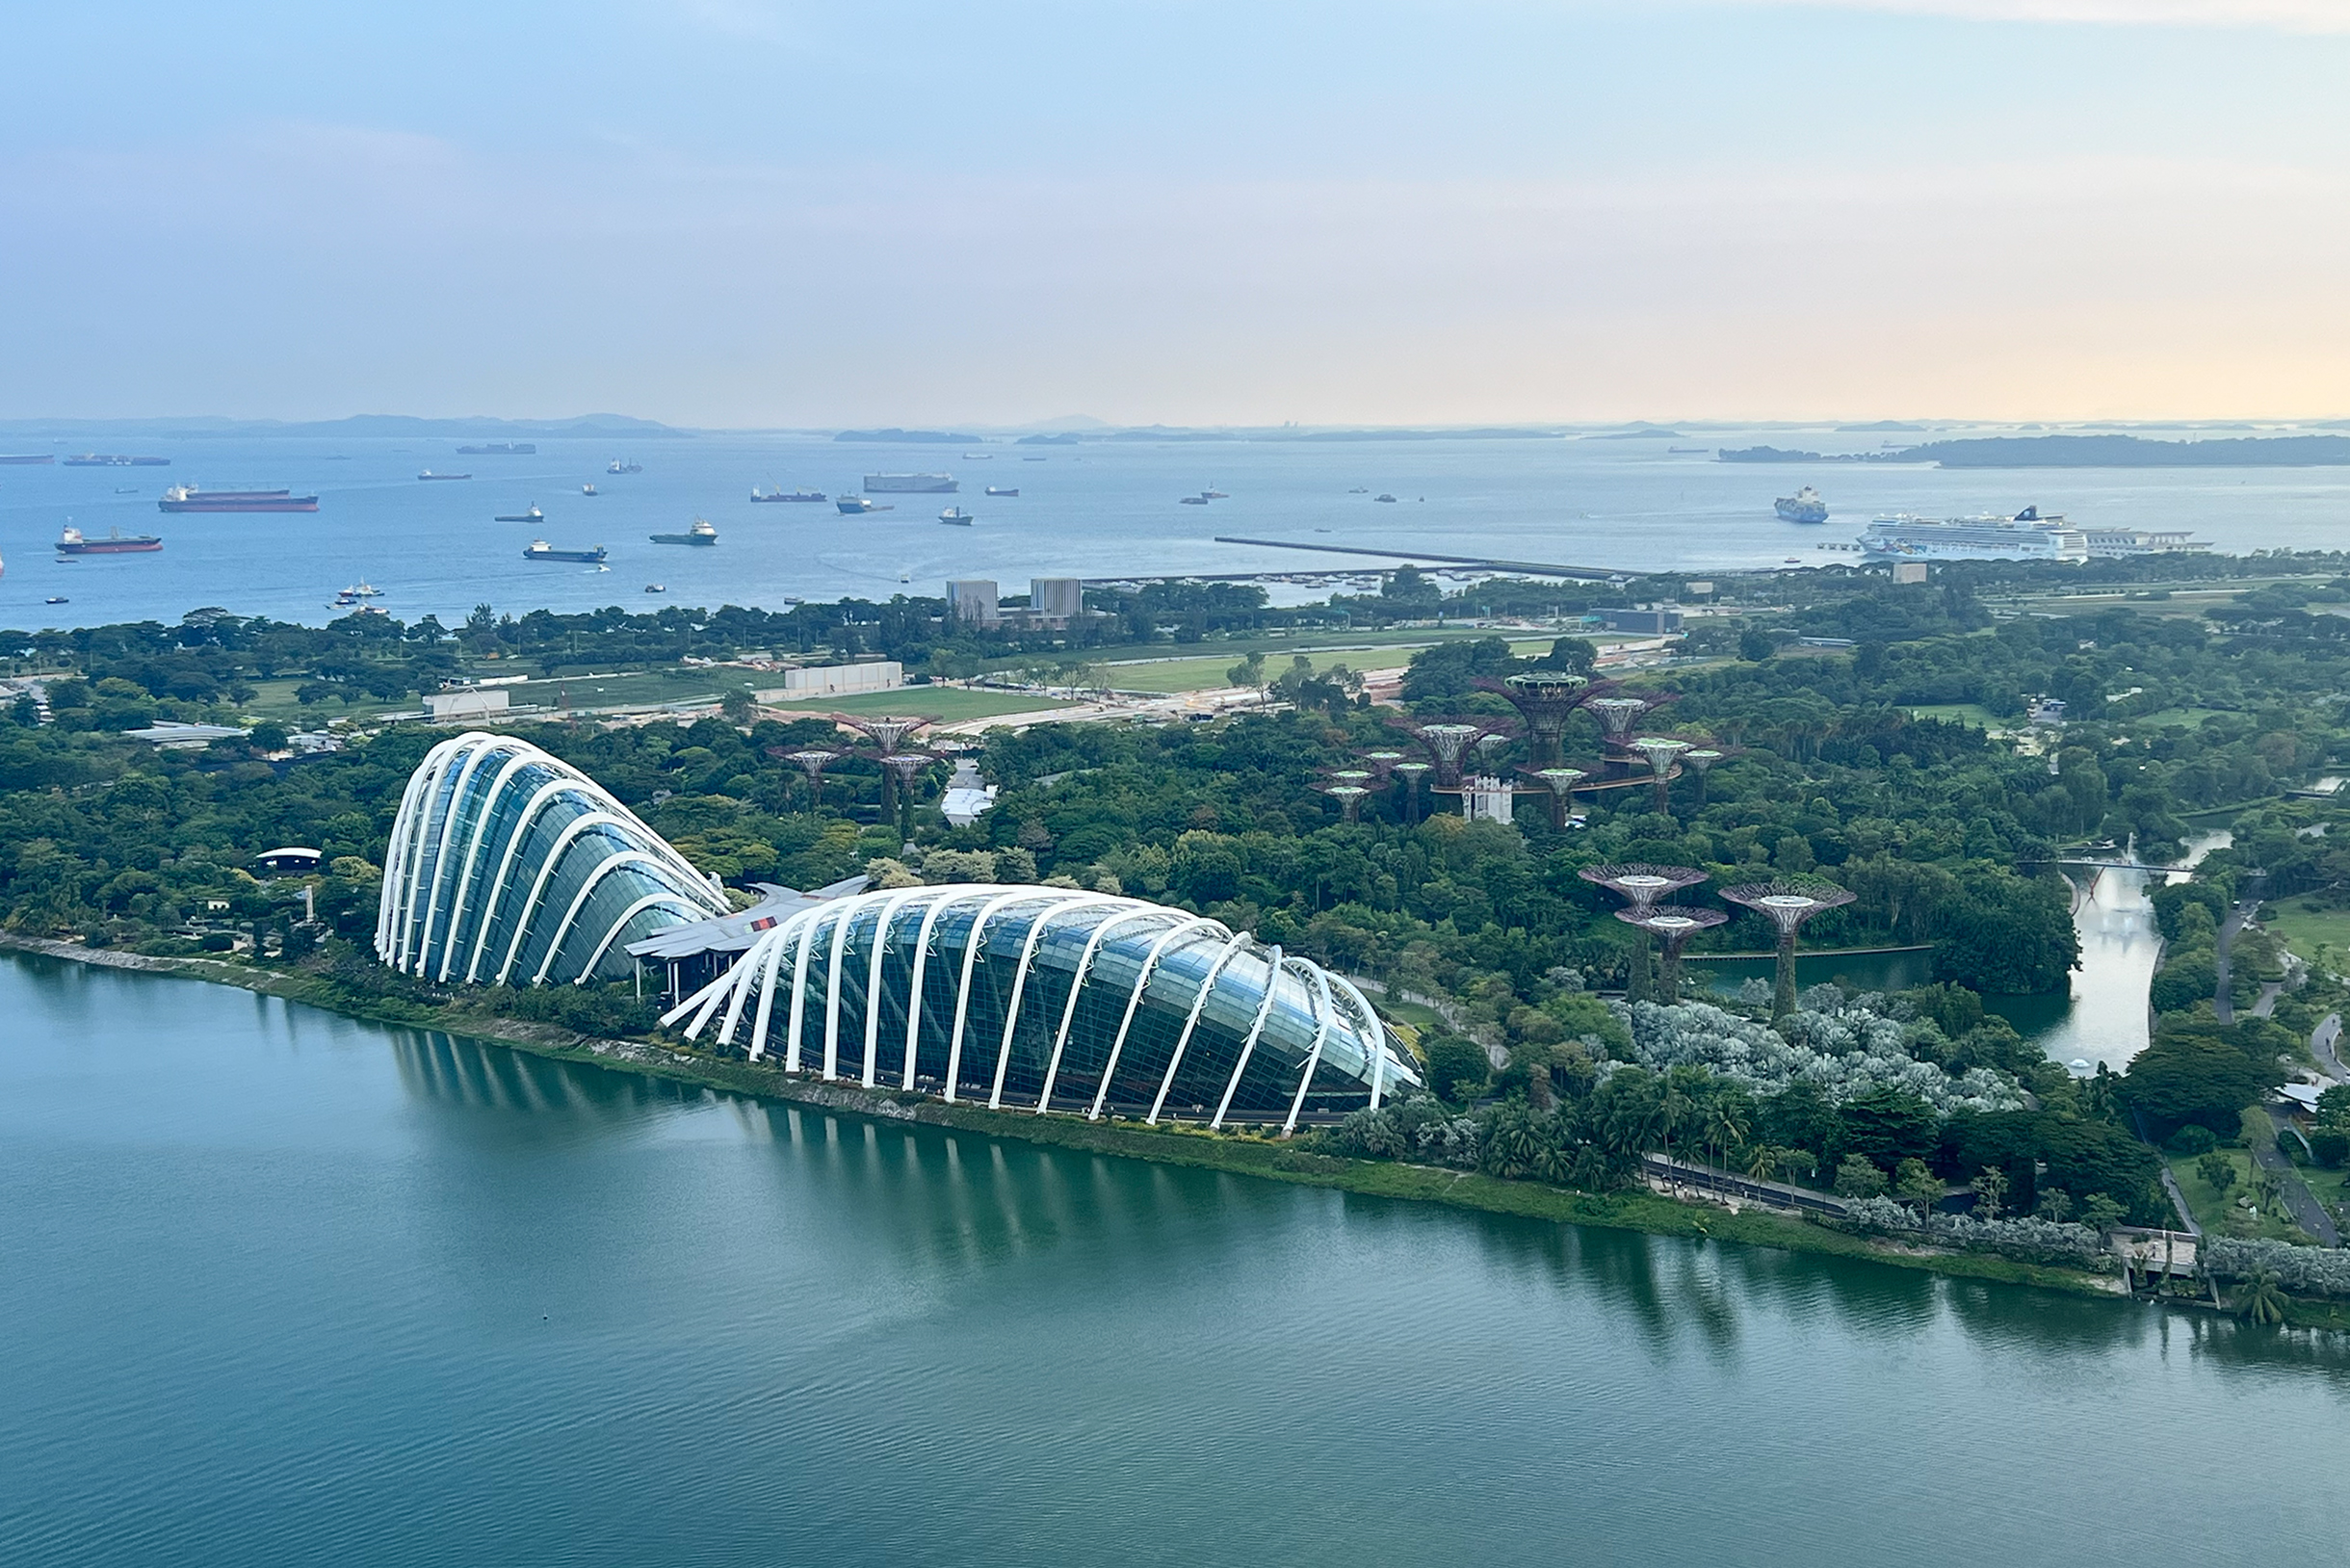 Вид на оранжереи и супердеревья в парке «Сады у залива» с колеса обозрения. Вдали большое количество судов. Порт Сингапура — один из крупнейших в мире